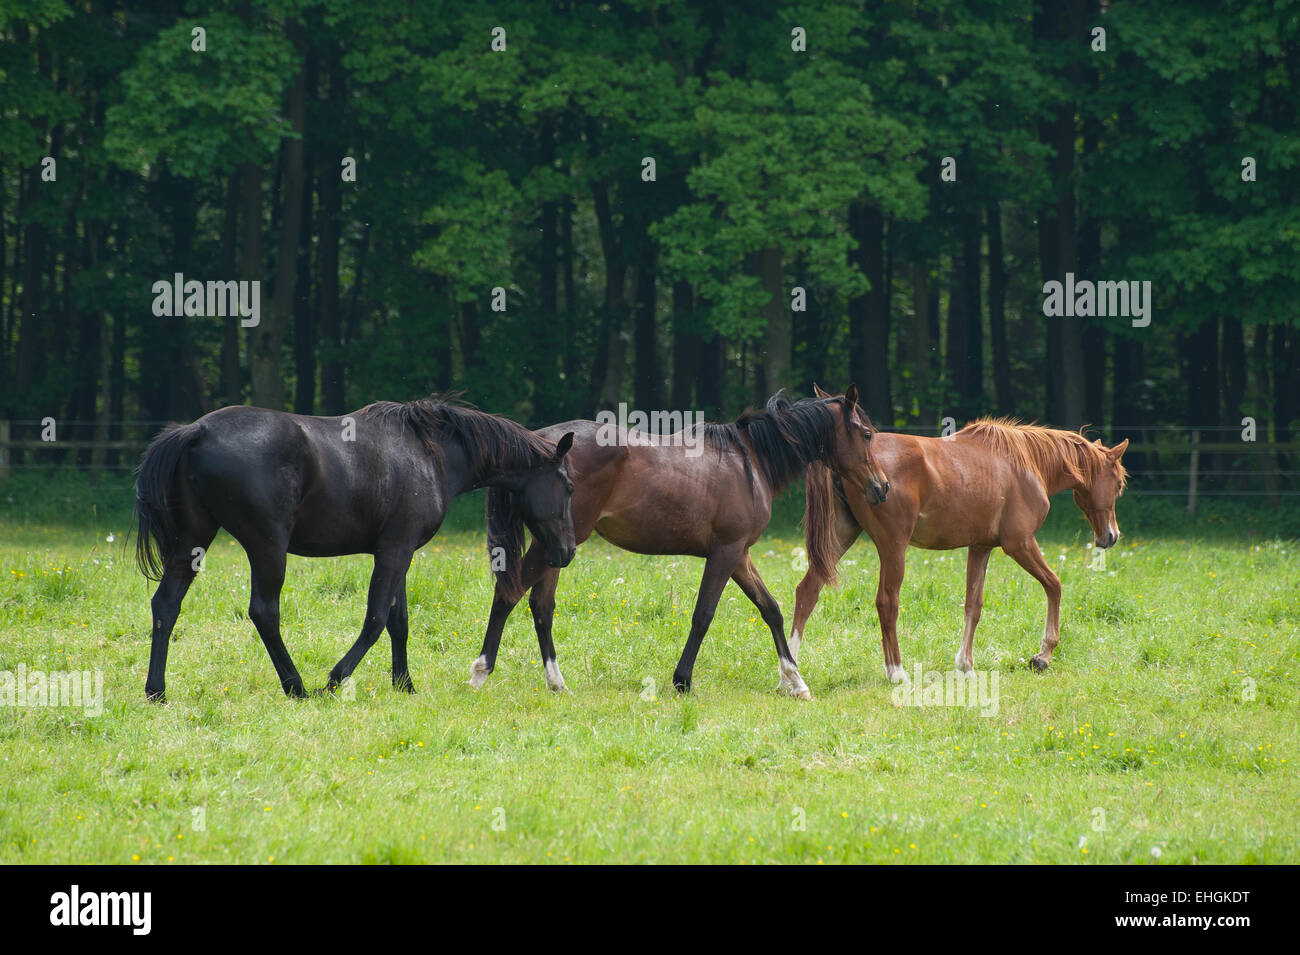 three horses Stock Photo